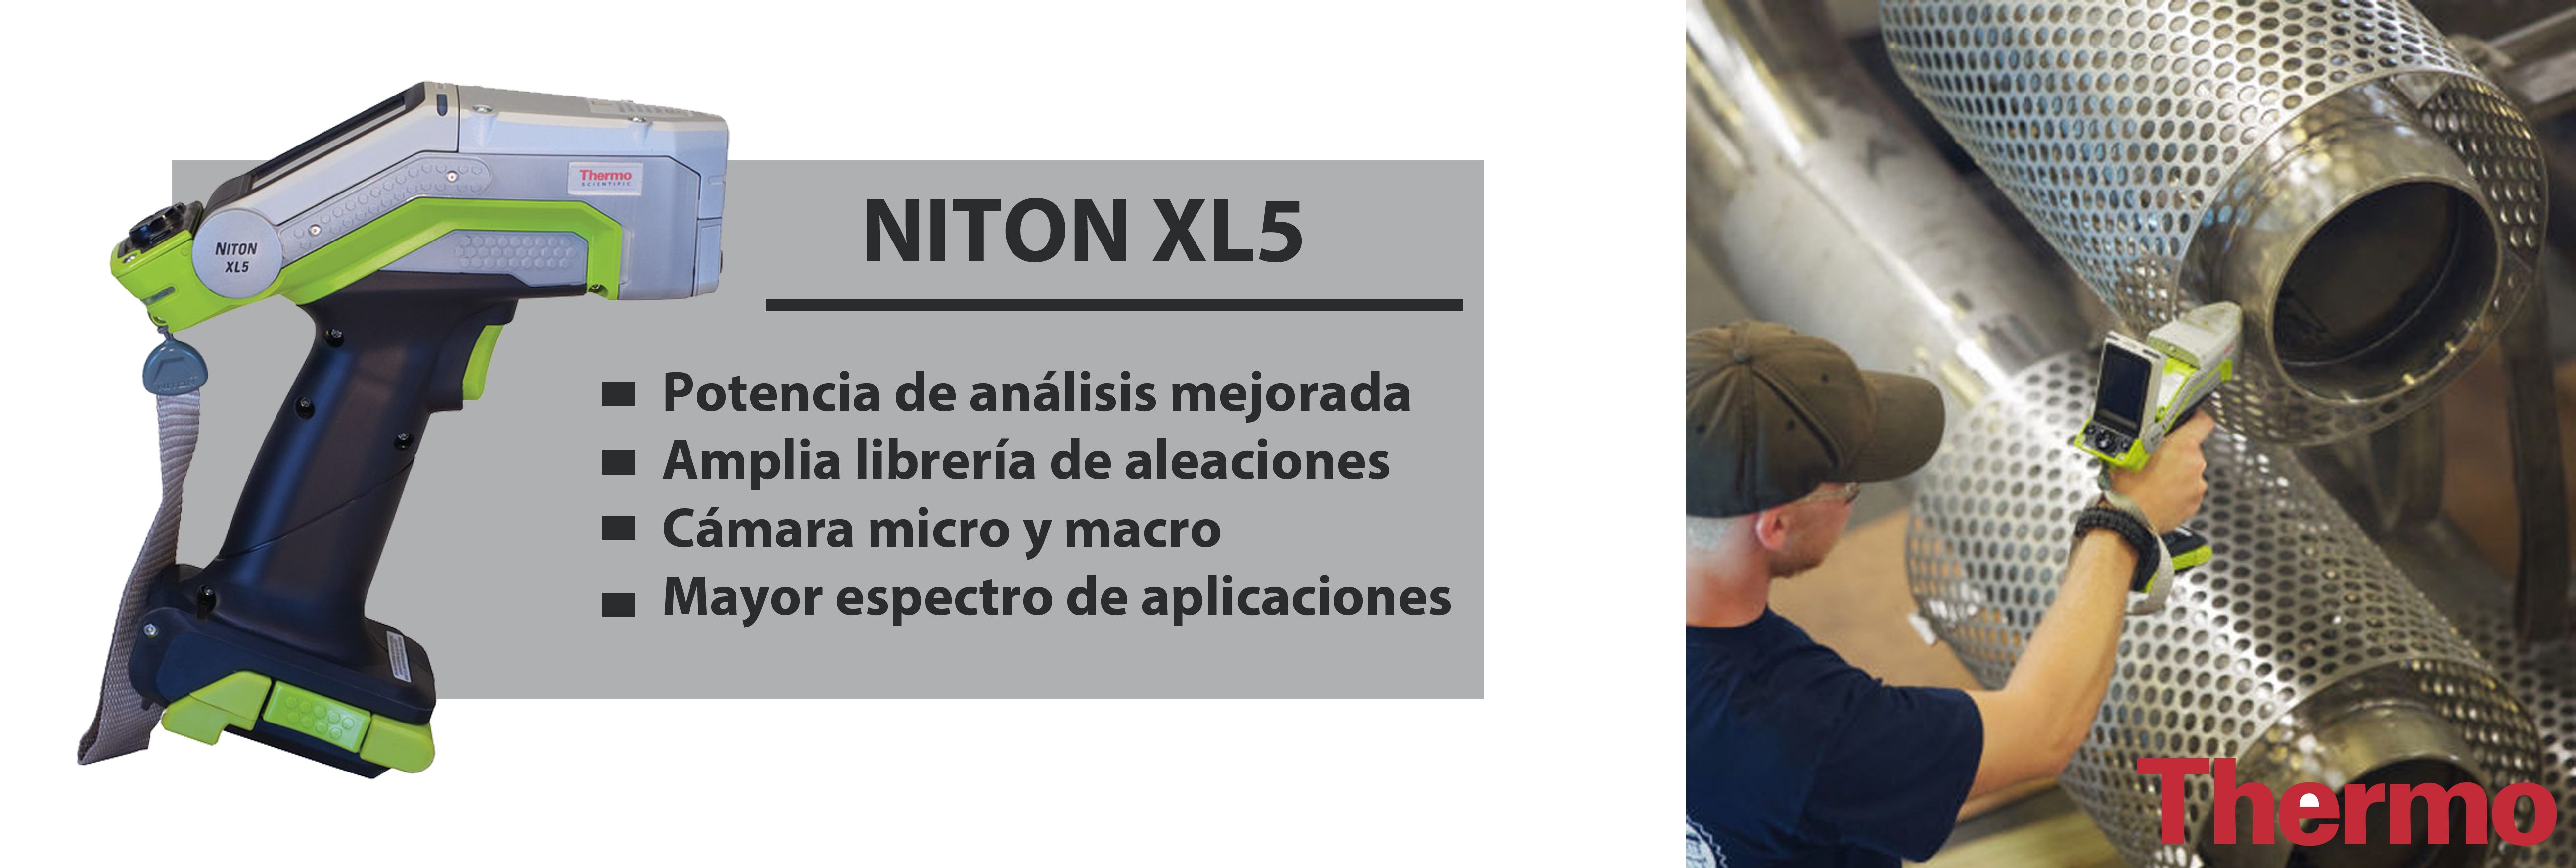 Niton XL5: Instrumento portátil para análisis rápidos de metales, aleaciones y minerales